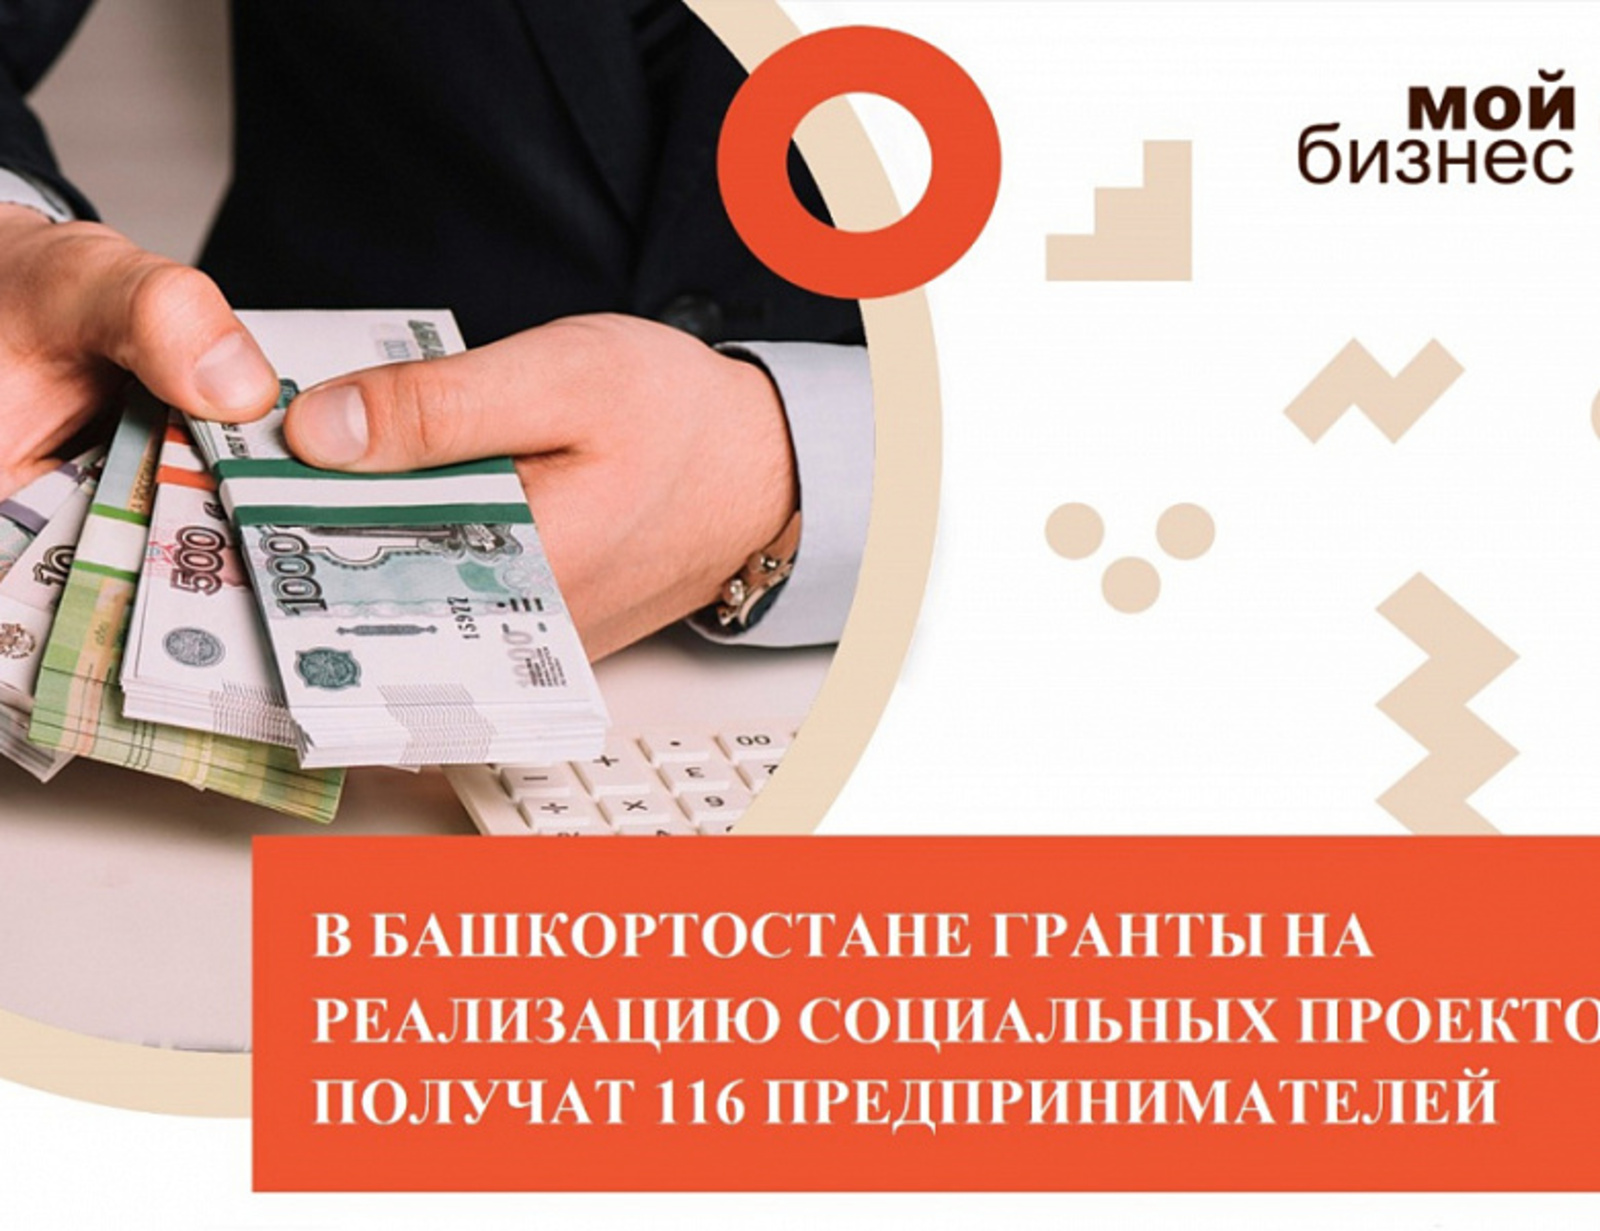 Социальные предприниматели Башкортостана получат гранты